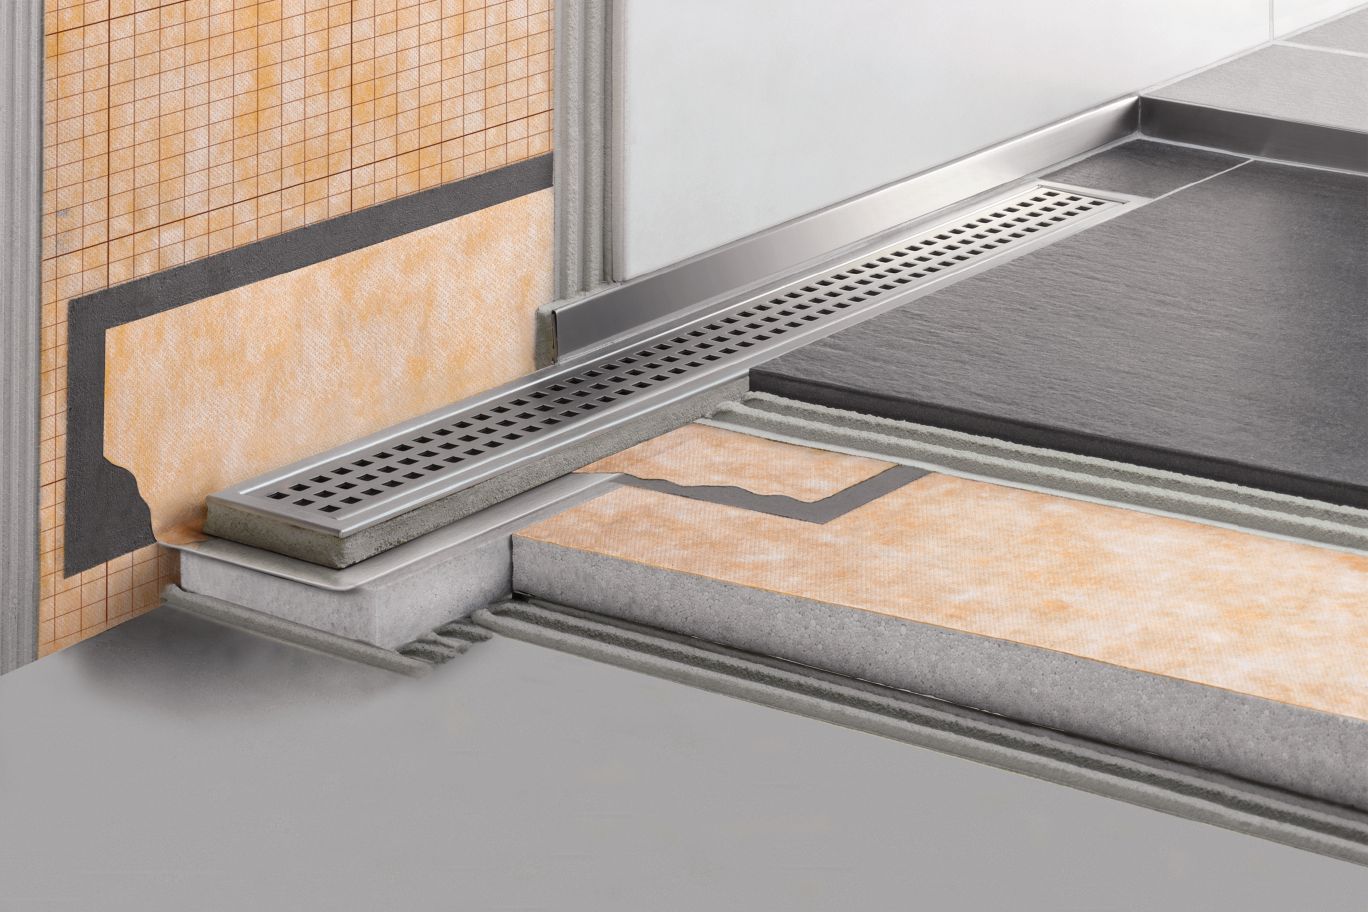 Schluter Kerdi Line Tile Center, Shower Floor Systems For Tiling